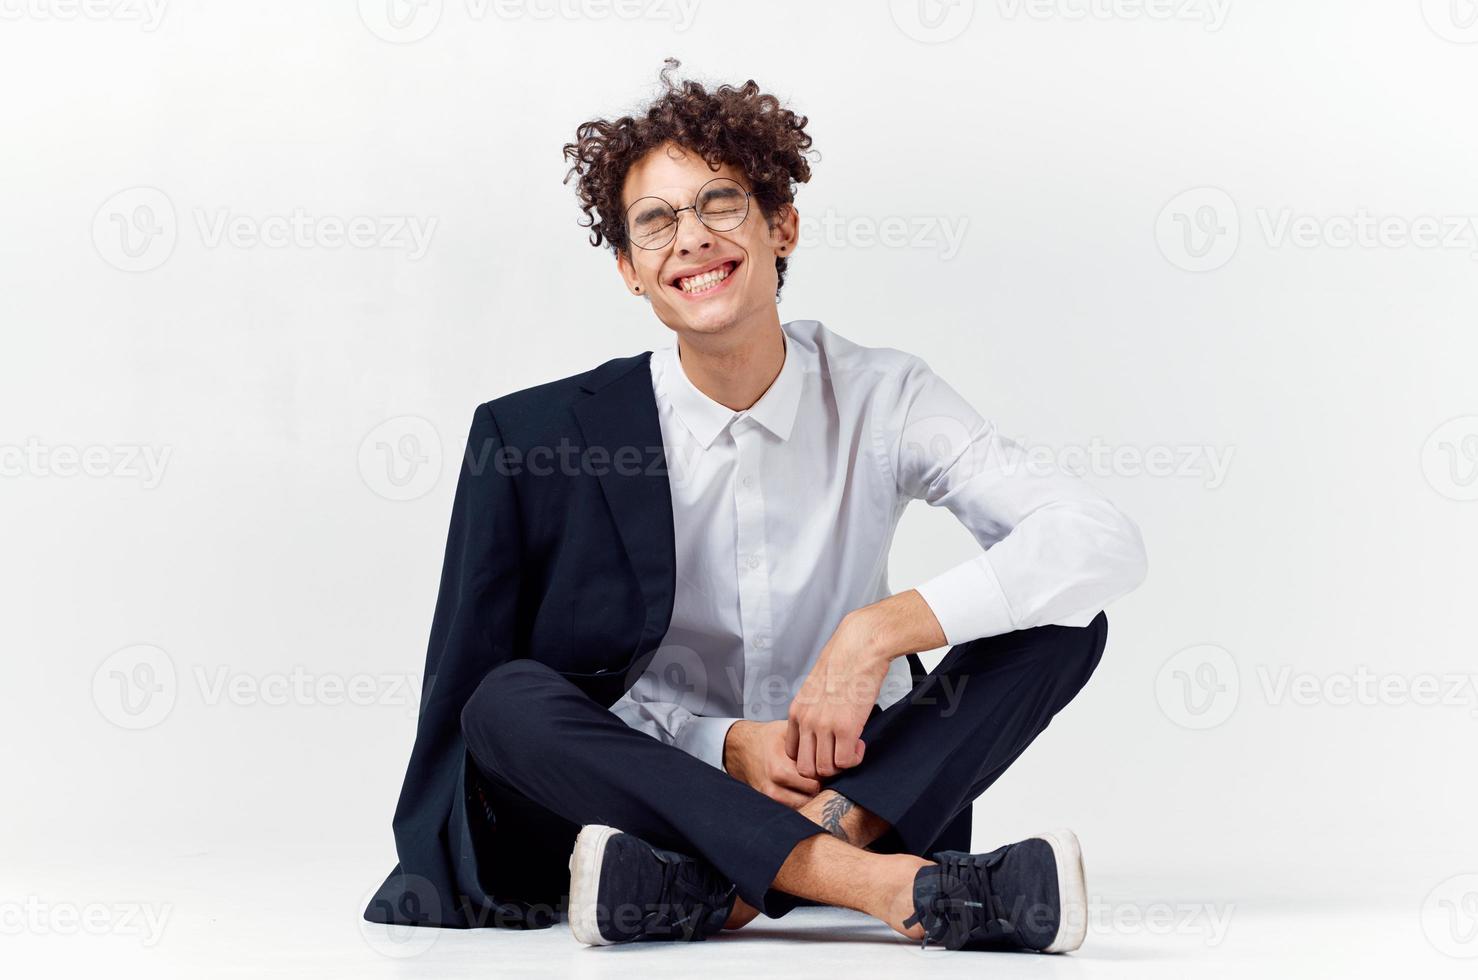 chico en un clásico traje se sienta en el piso en un brillante habitación lentes en el cara foto